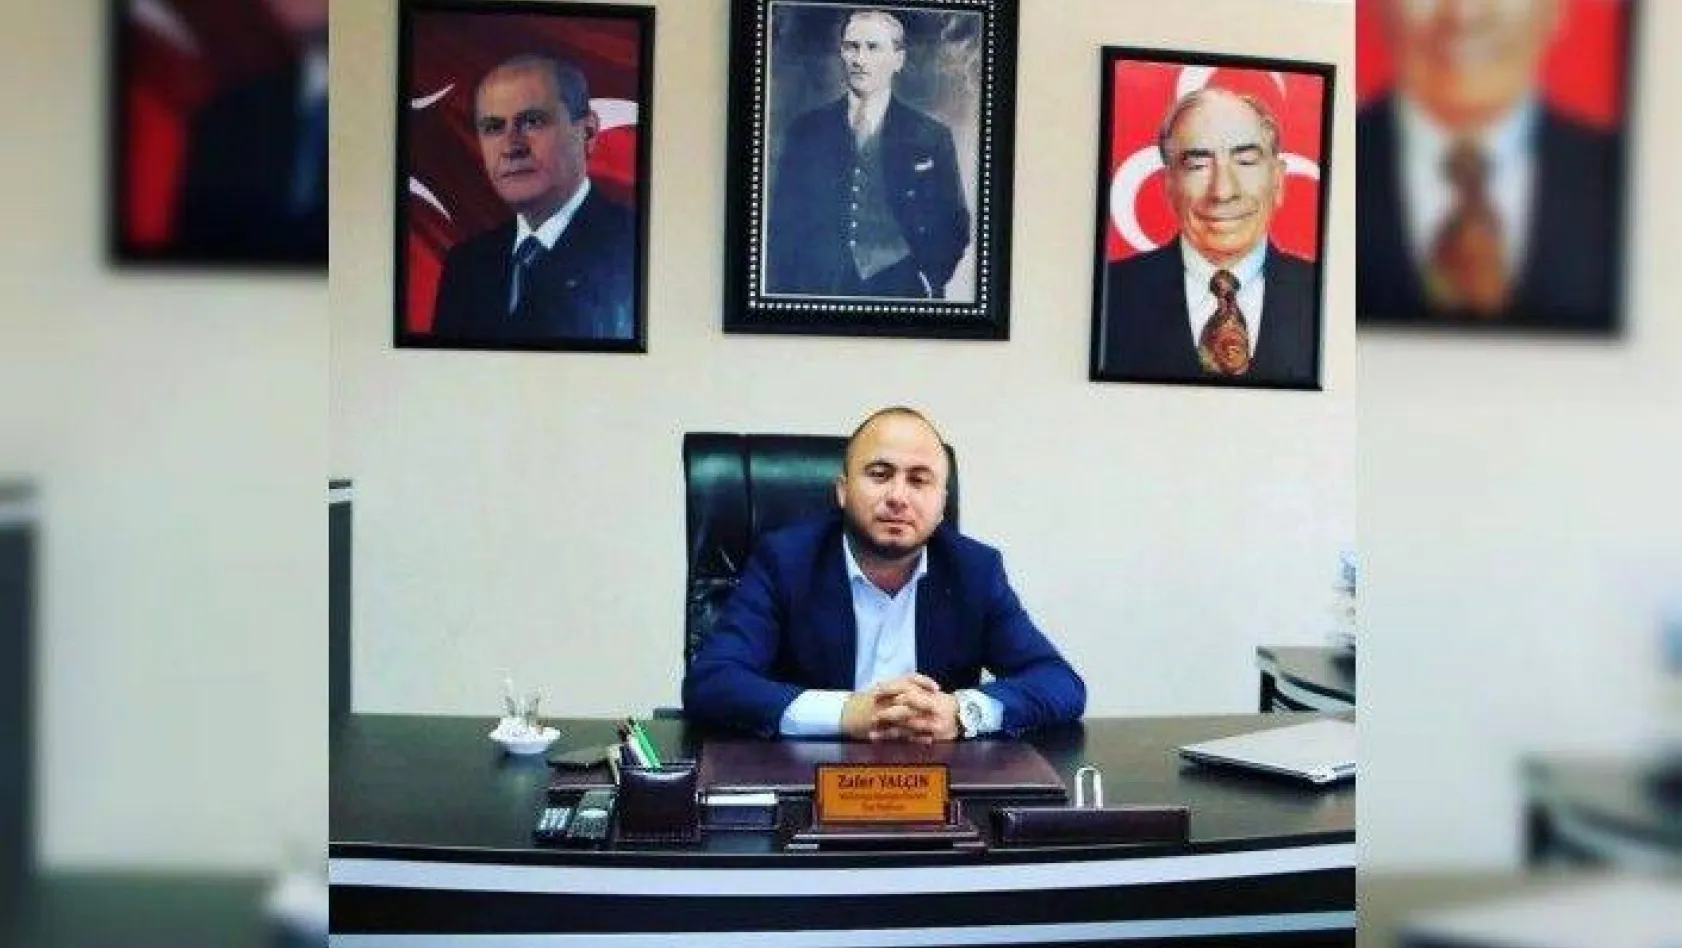 MHP İlçe Başkanı Zafer Yalçın'ın anlamlı mesajı